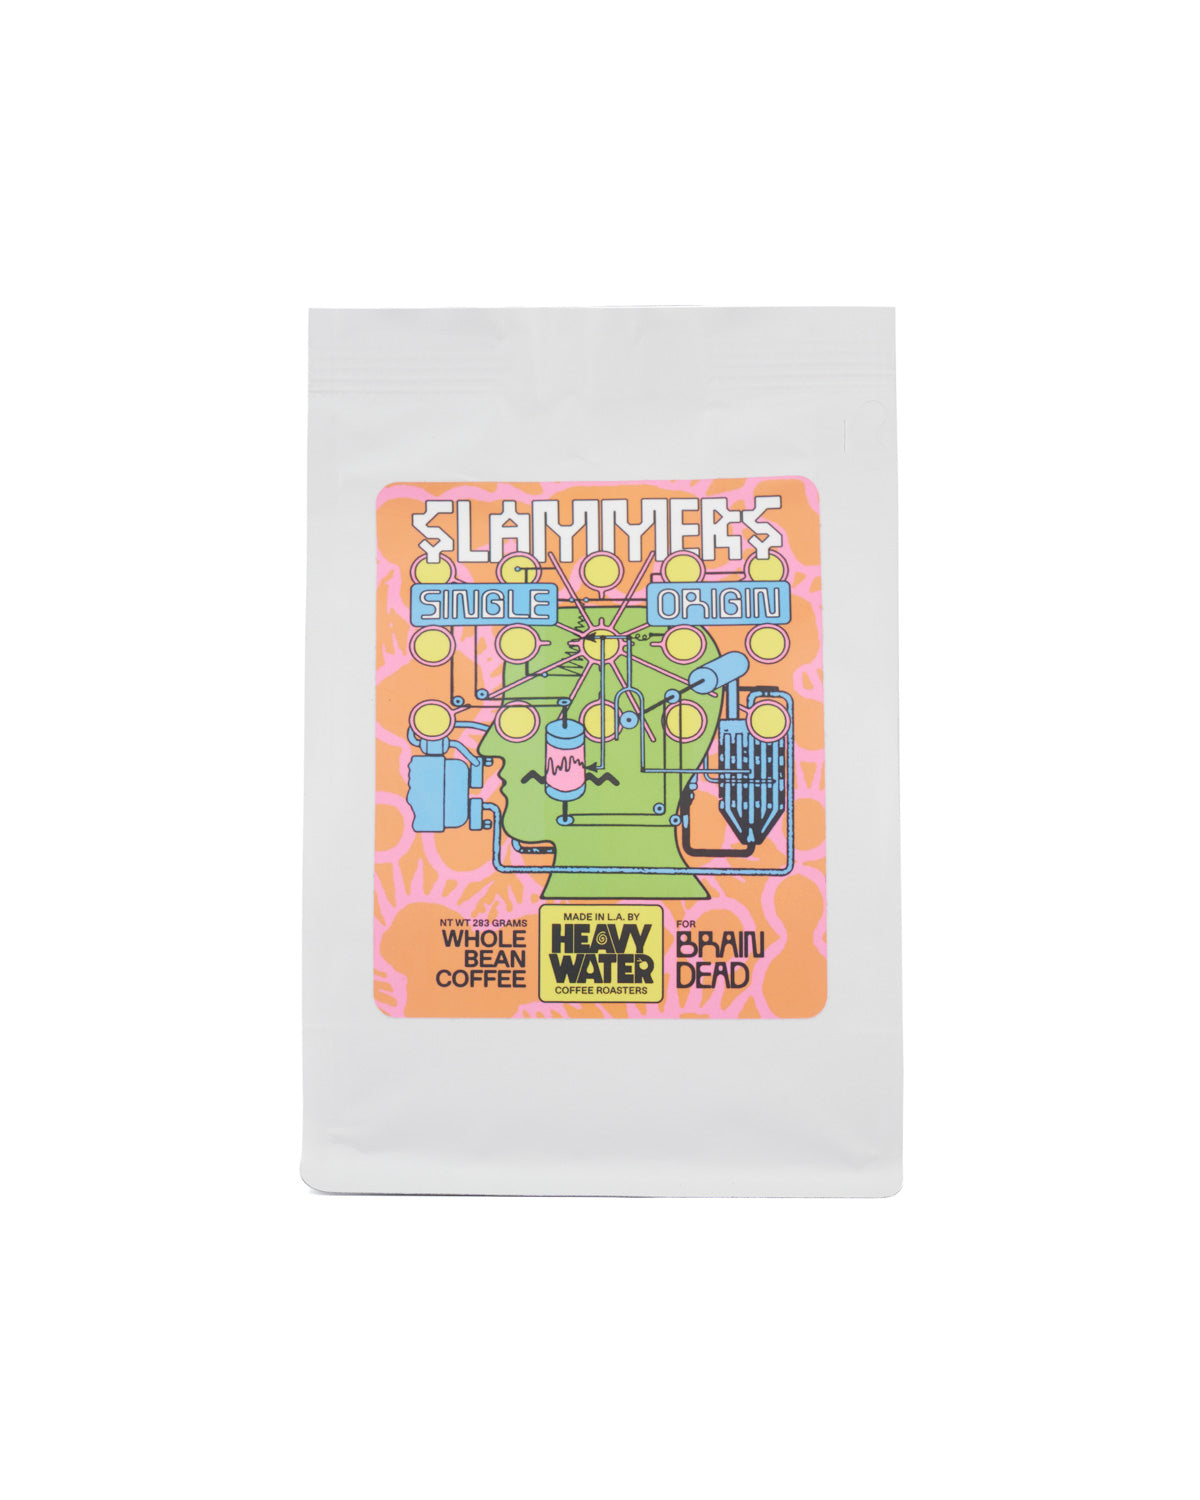 Slammers x Heavy Water Single Origin Whole Bean Coffee - Brown 1